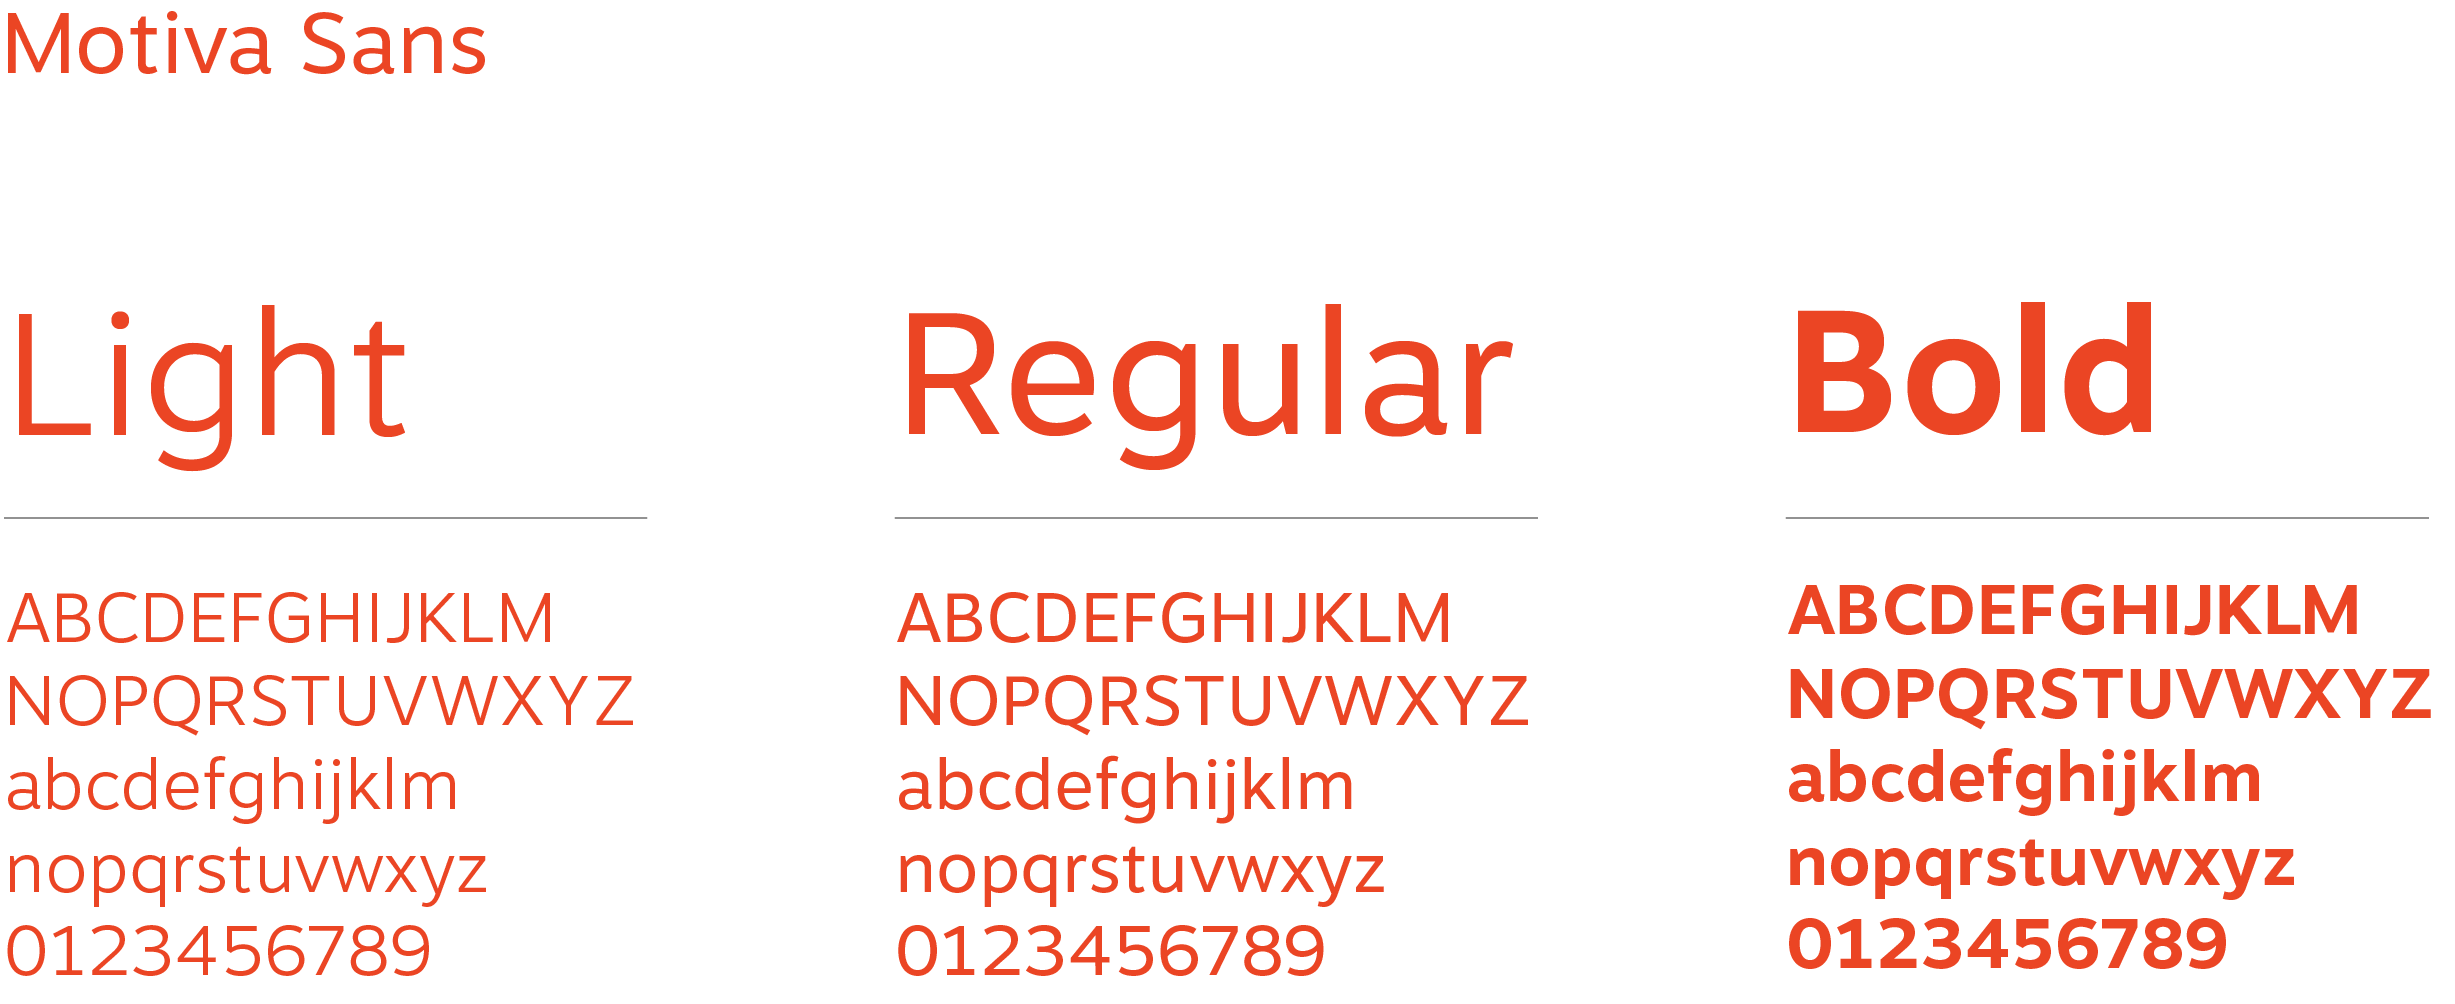 Brand font Motiva Sans type specimen.